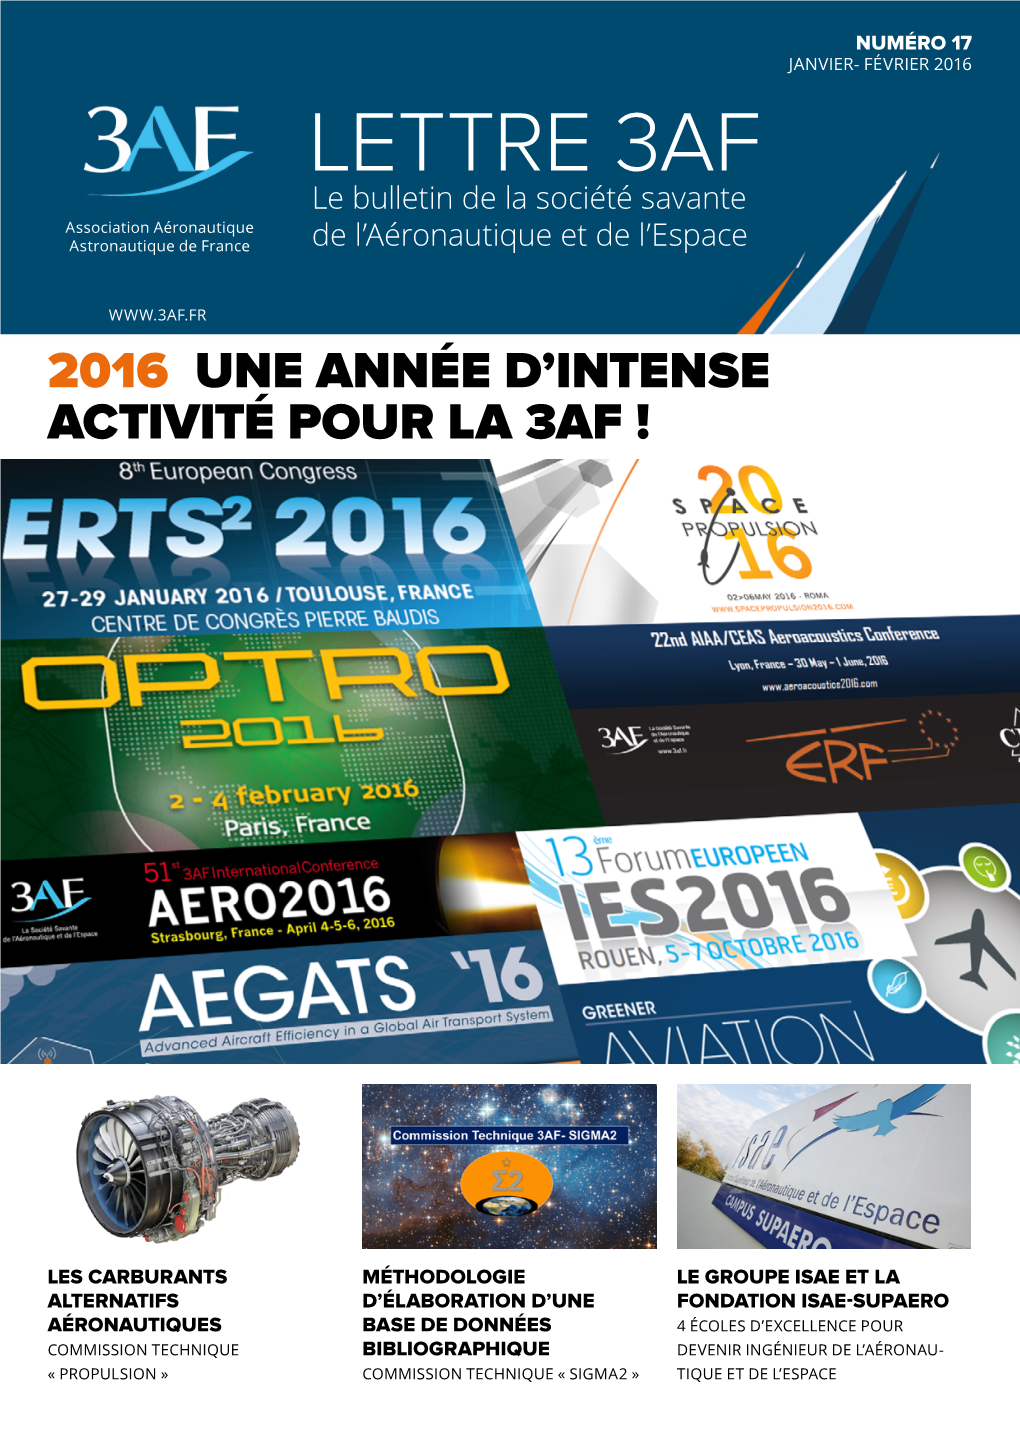 LETTRE 3AF Le Bulletin De La Société Savante Association Aéronautique Astronautique De France De L’Aéronautique Et De L’Espace